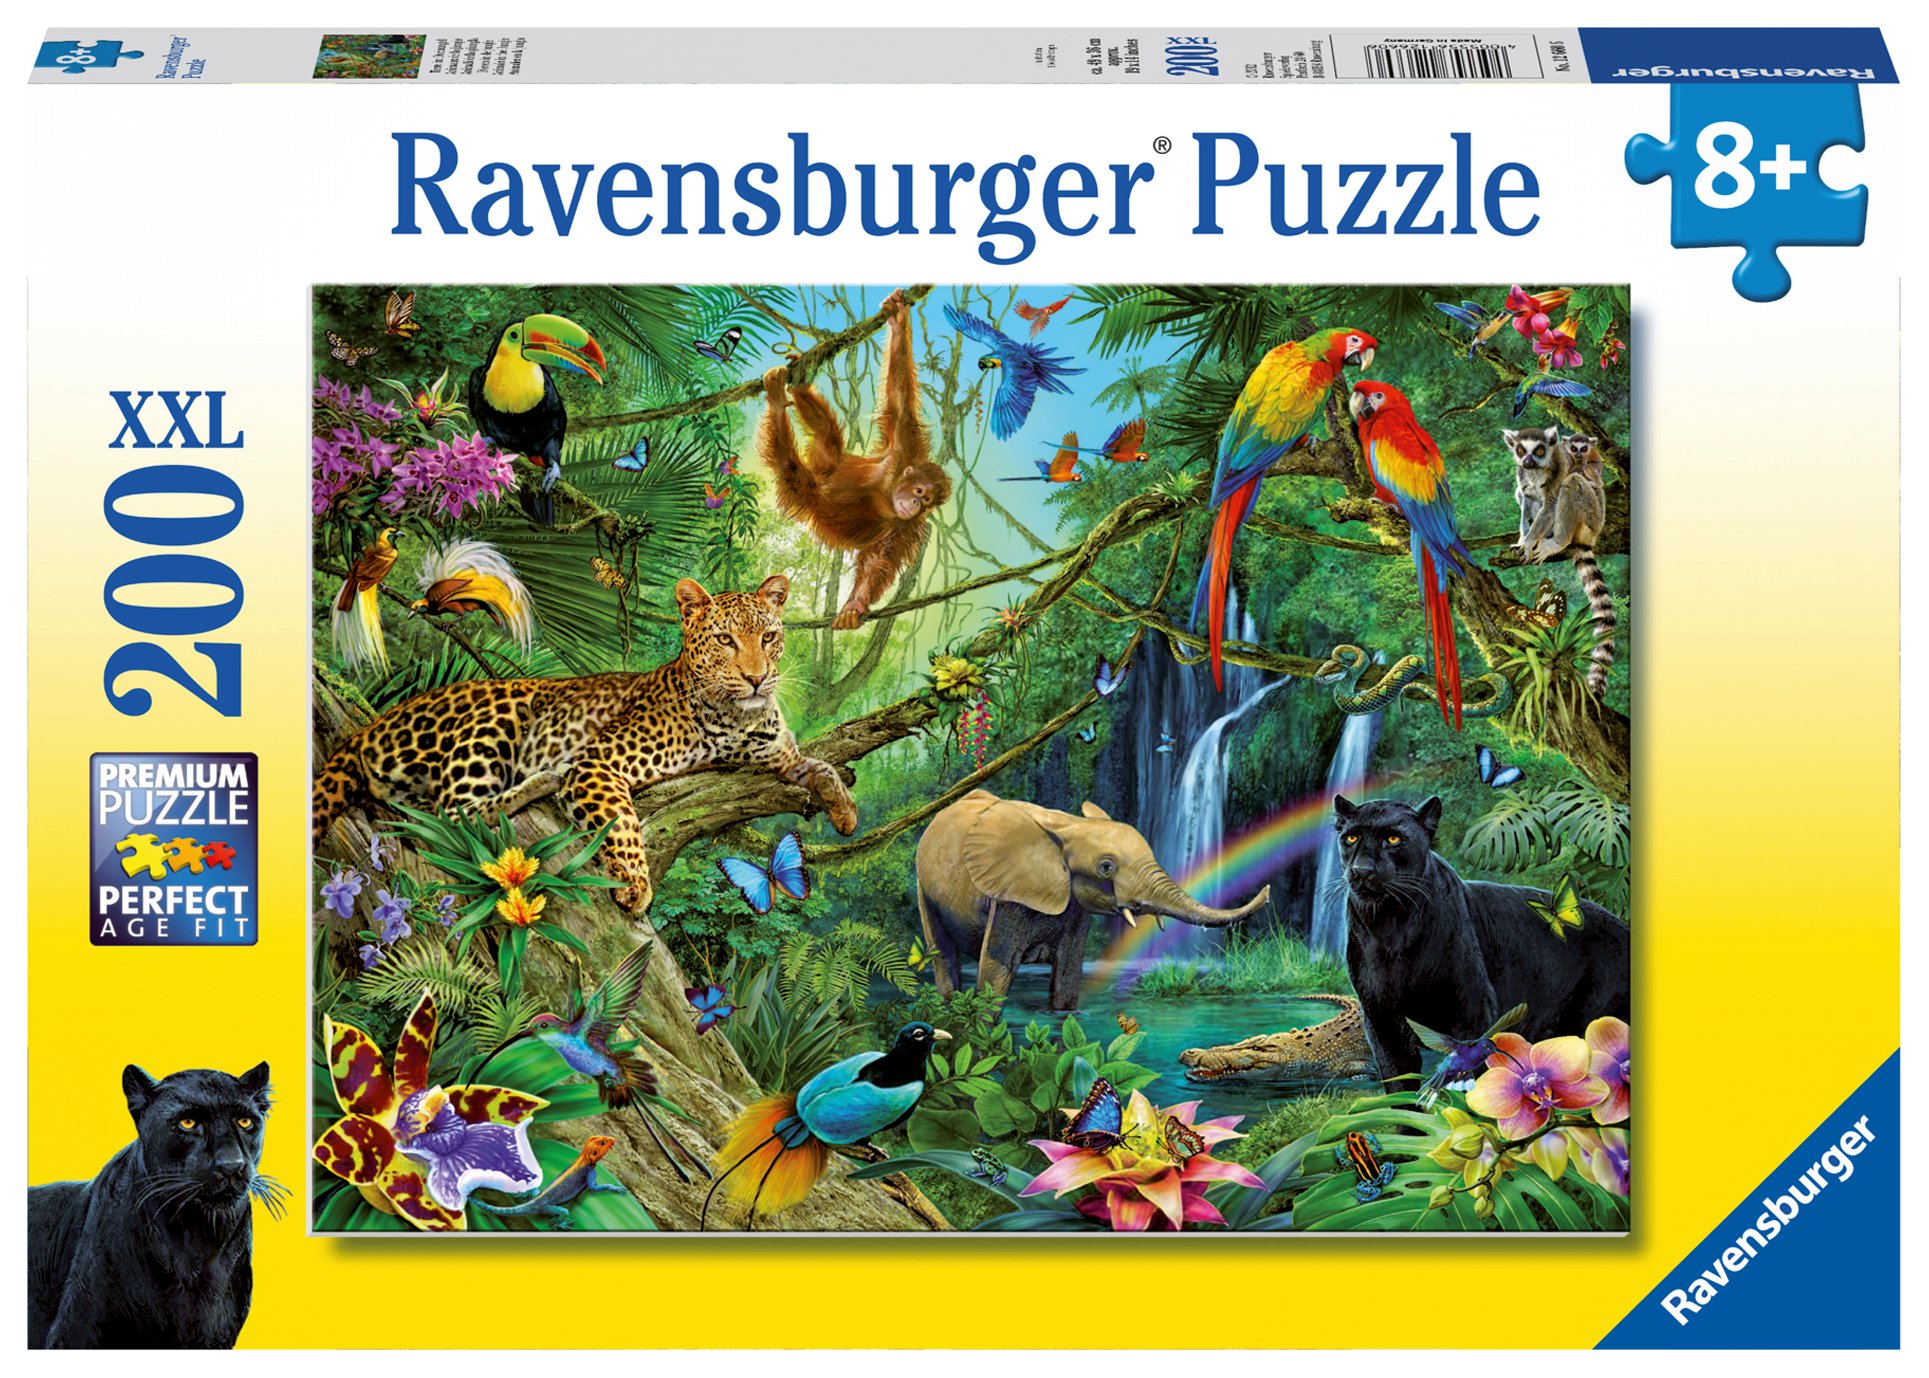 Пазлы 200. Пазл Ravensburger XXL джунгли (12660), 200 дет.. Ravensburger 2000 джунгли. Пазлы Ravensburger. Пазлы 200 элементов.